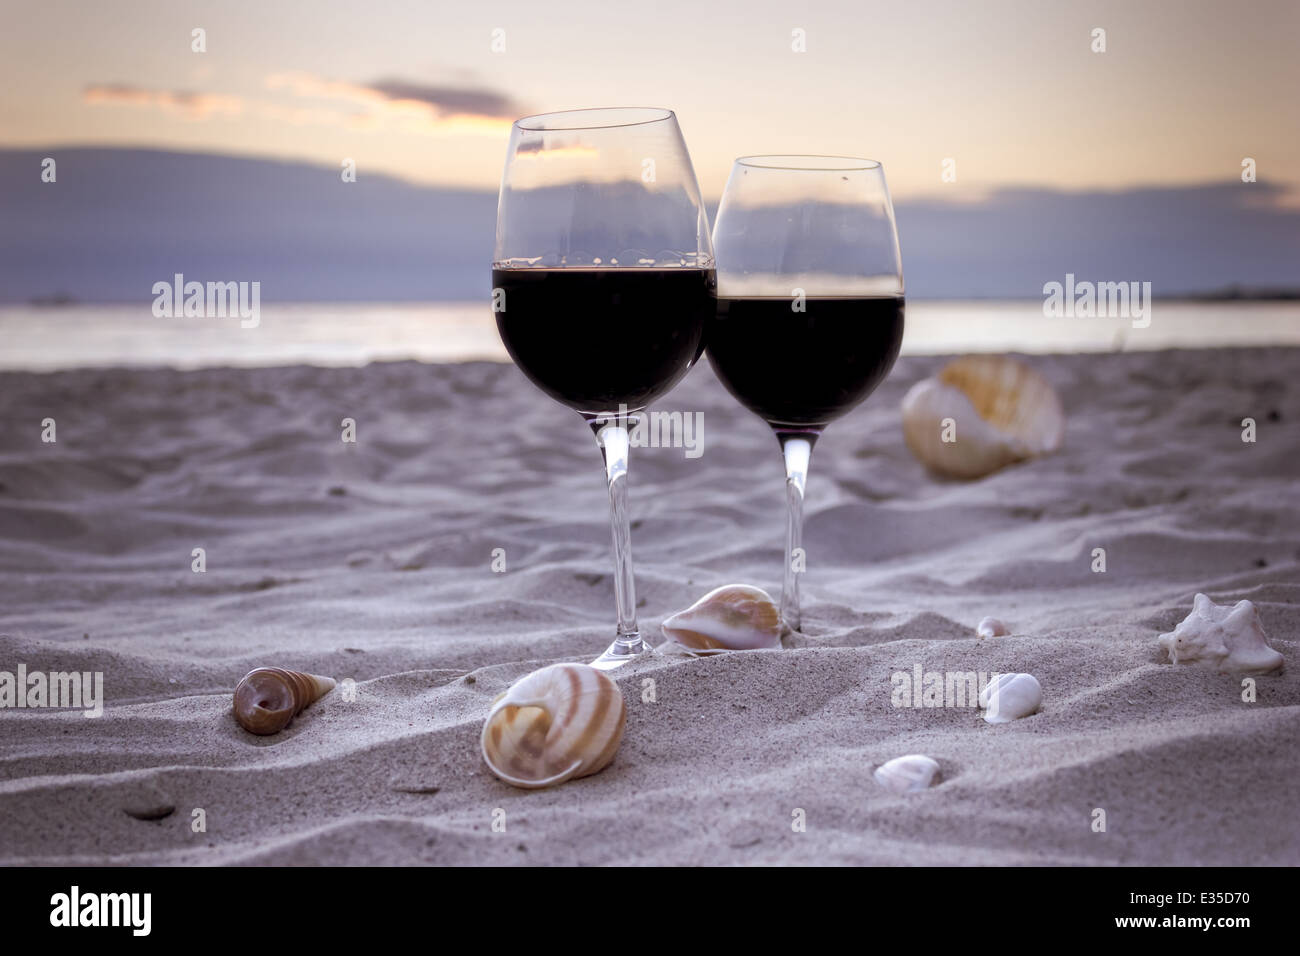 Plage romantique soirée sur le coucher du soleil : deux verres de vin, des bougies, des coquillages, des Valentines Day Banque D'Images